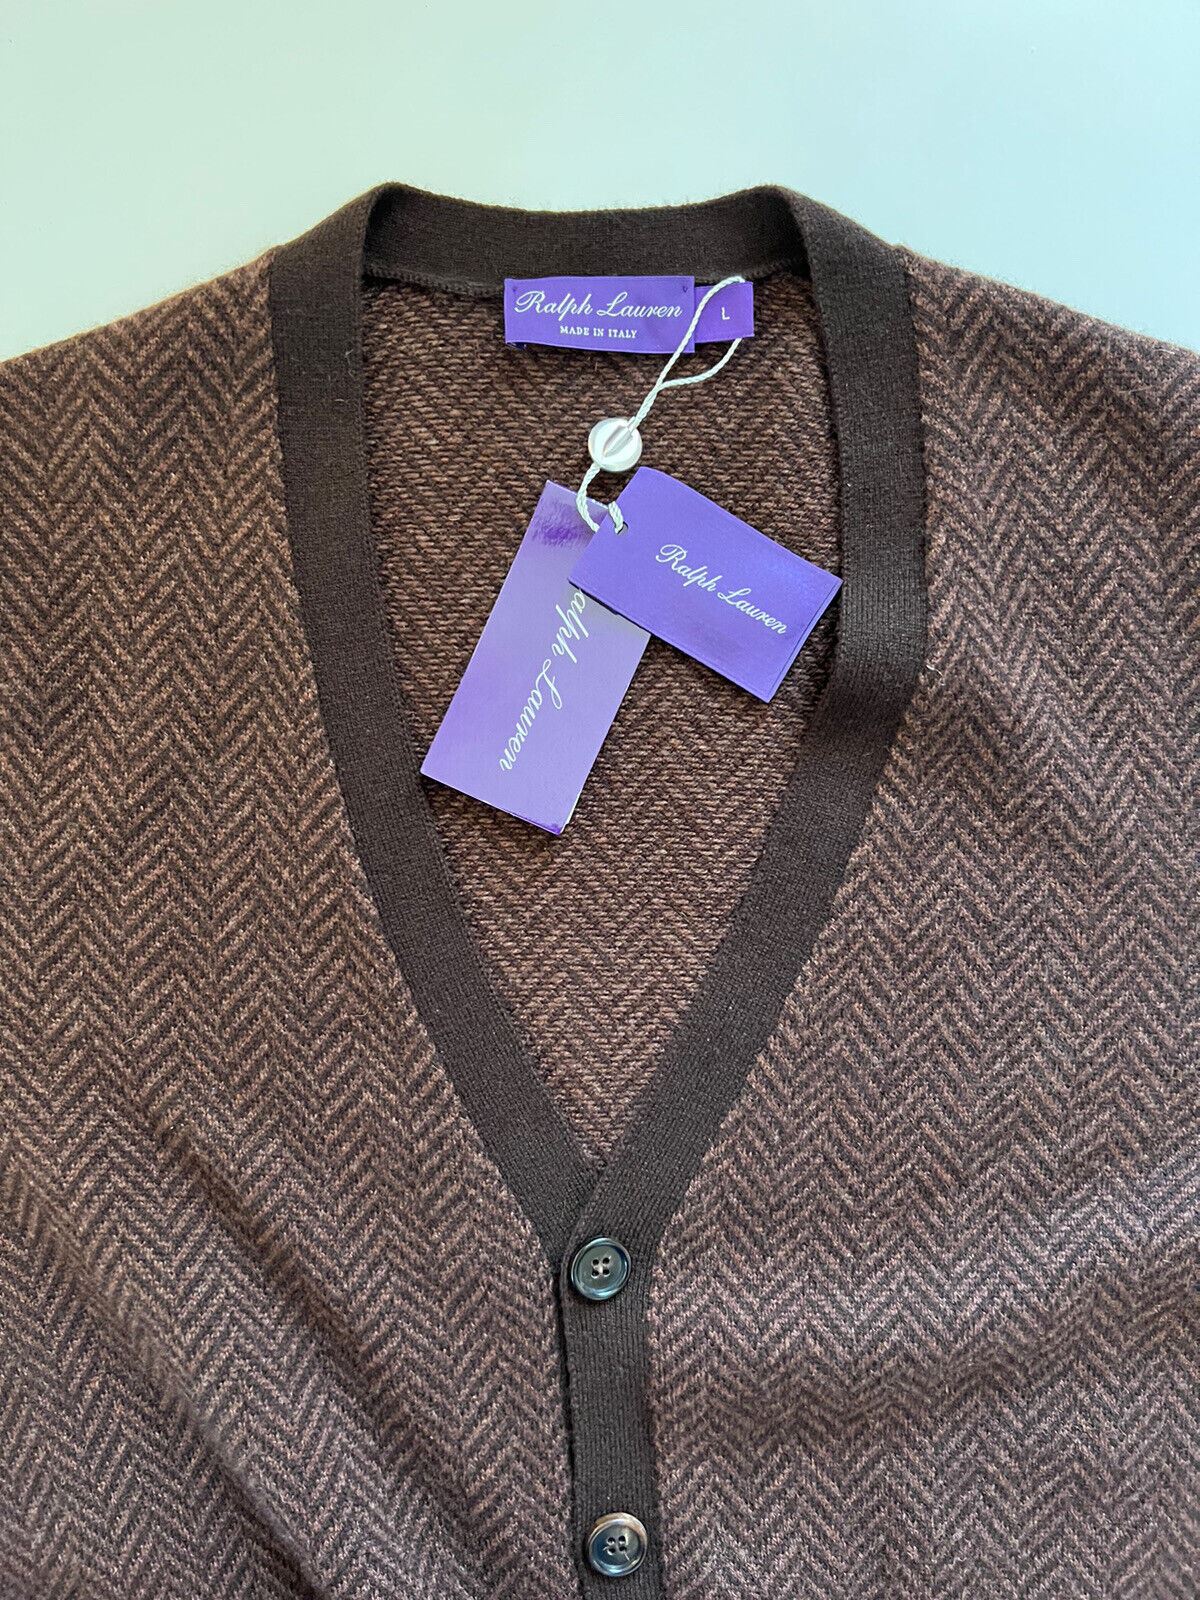 NWT 1695 долларов США Ralph Lauren Purple Label Кашемировый коричневый кардиган L Сделано в Италии